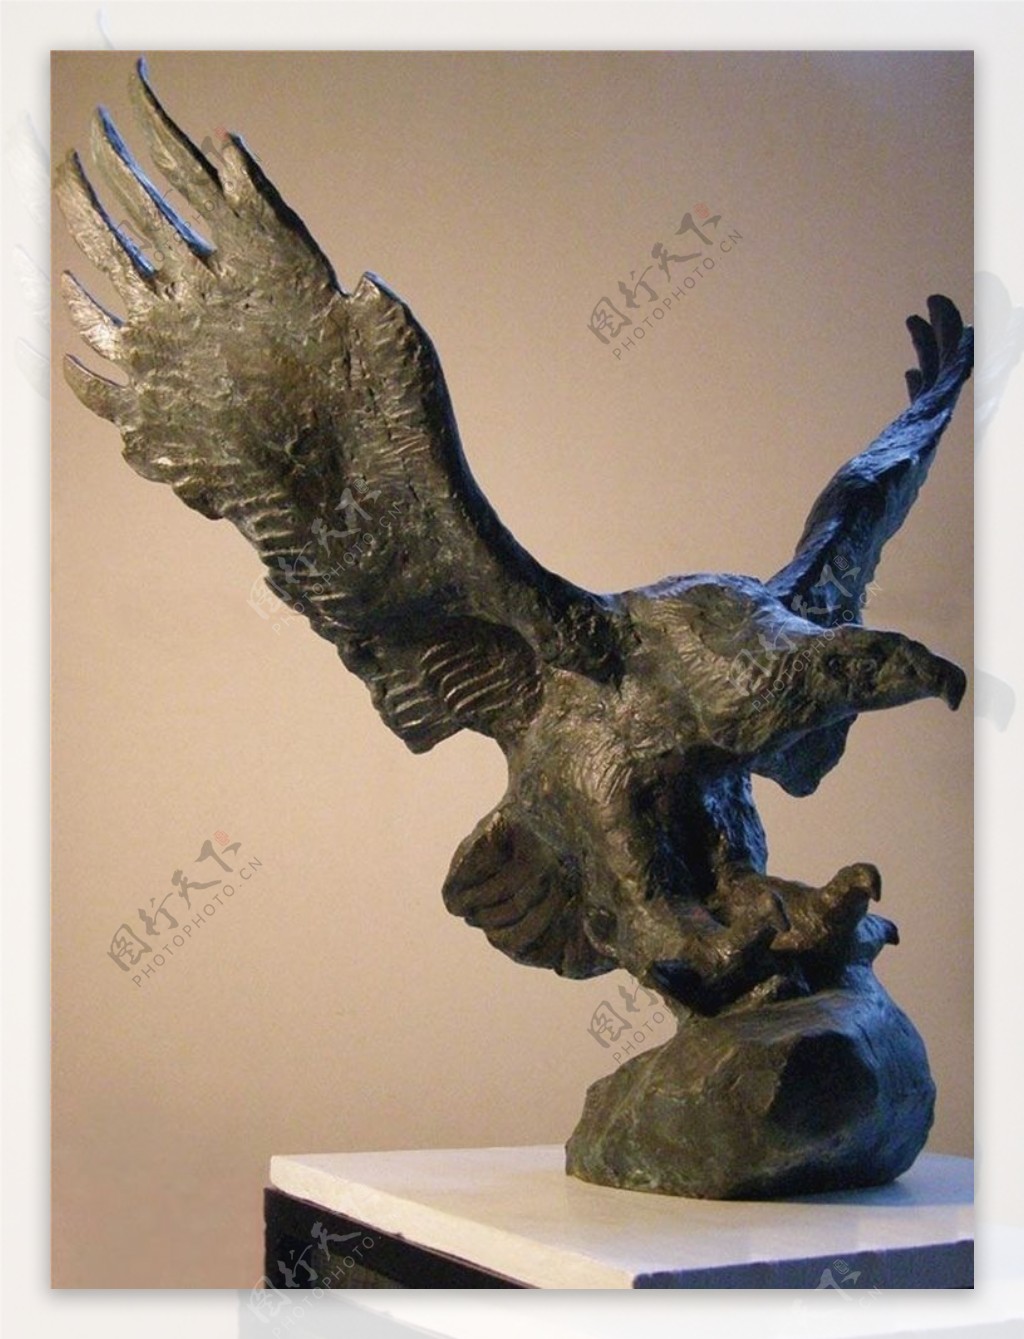 鹰雕塑